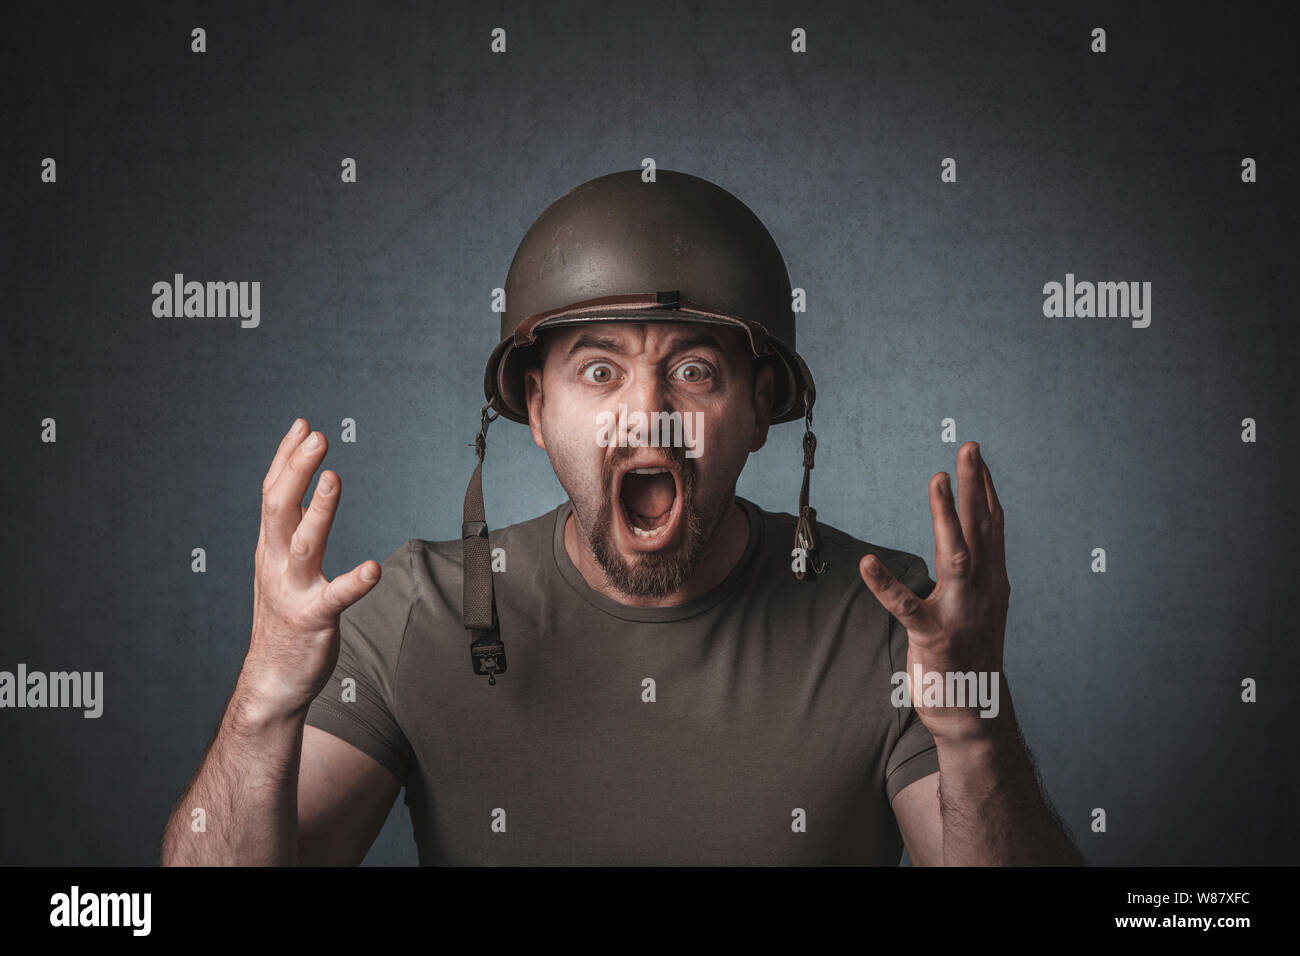 Retrato de un soldado gritando con los brazos abiertos. Él está usando un casco de metal. Foto de stock